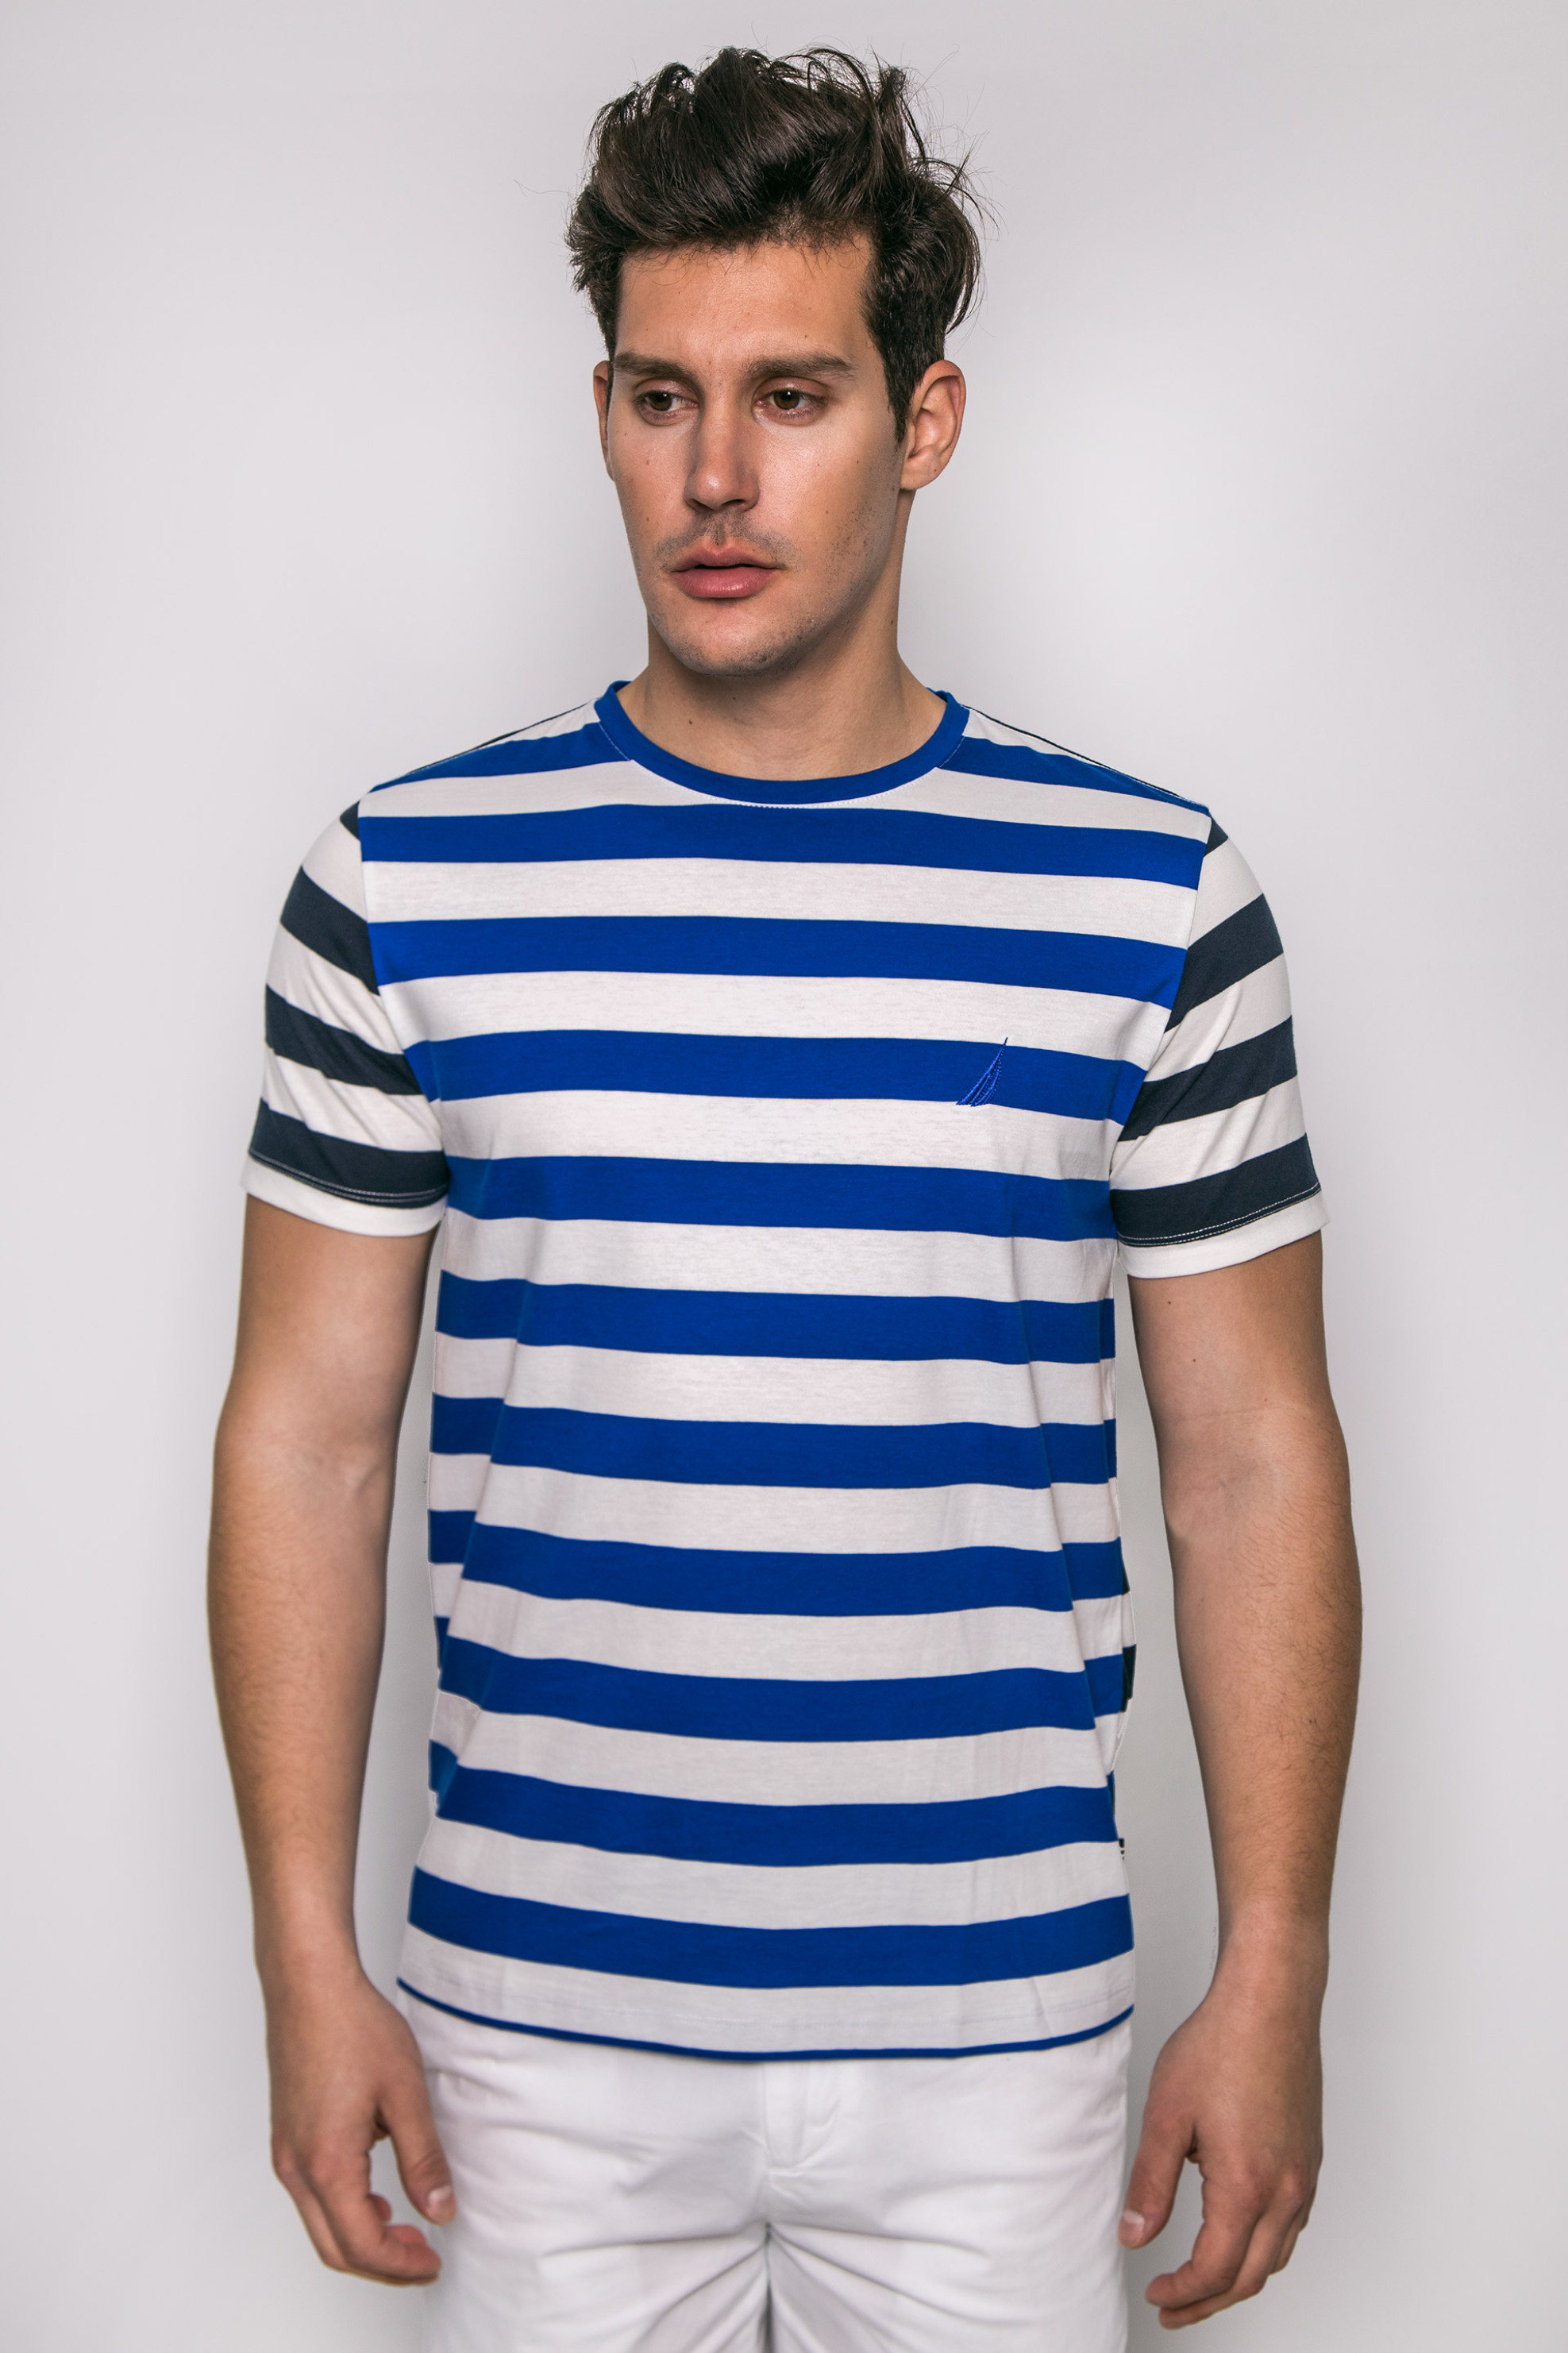 Άνδρας > ΡΟΥΧΑ > Μπλούζες > T-Shirts Ανδρικό T-shirt, Nautica - K71102 Μπλε Ηλεκτρίκ